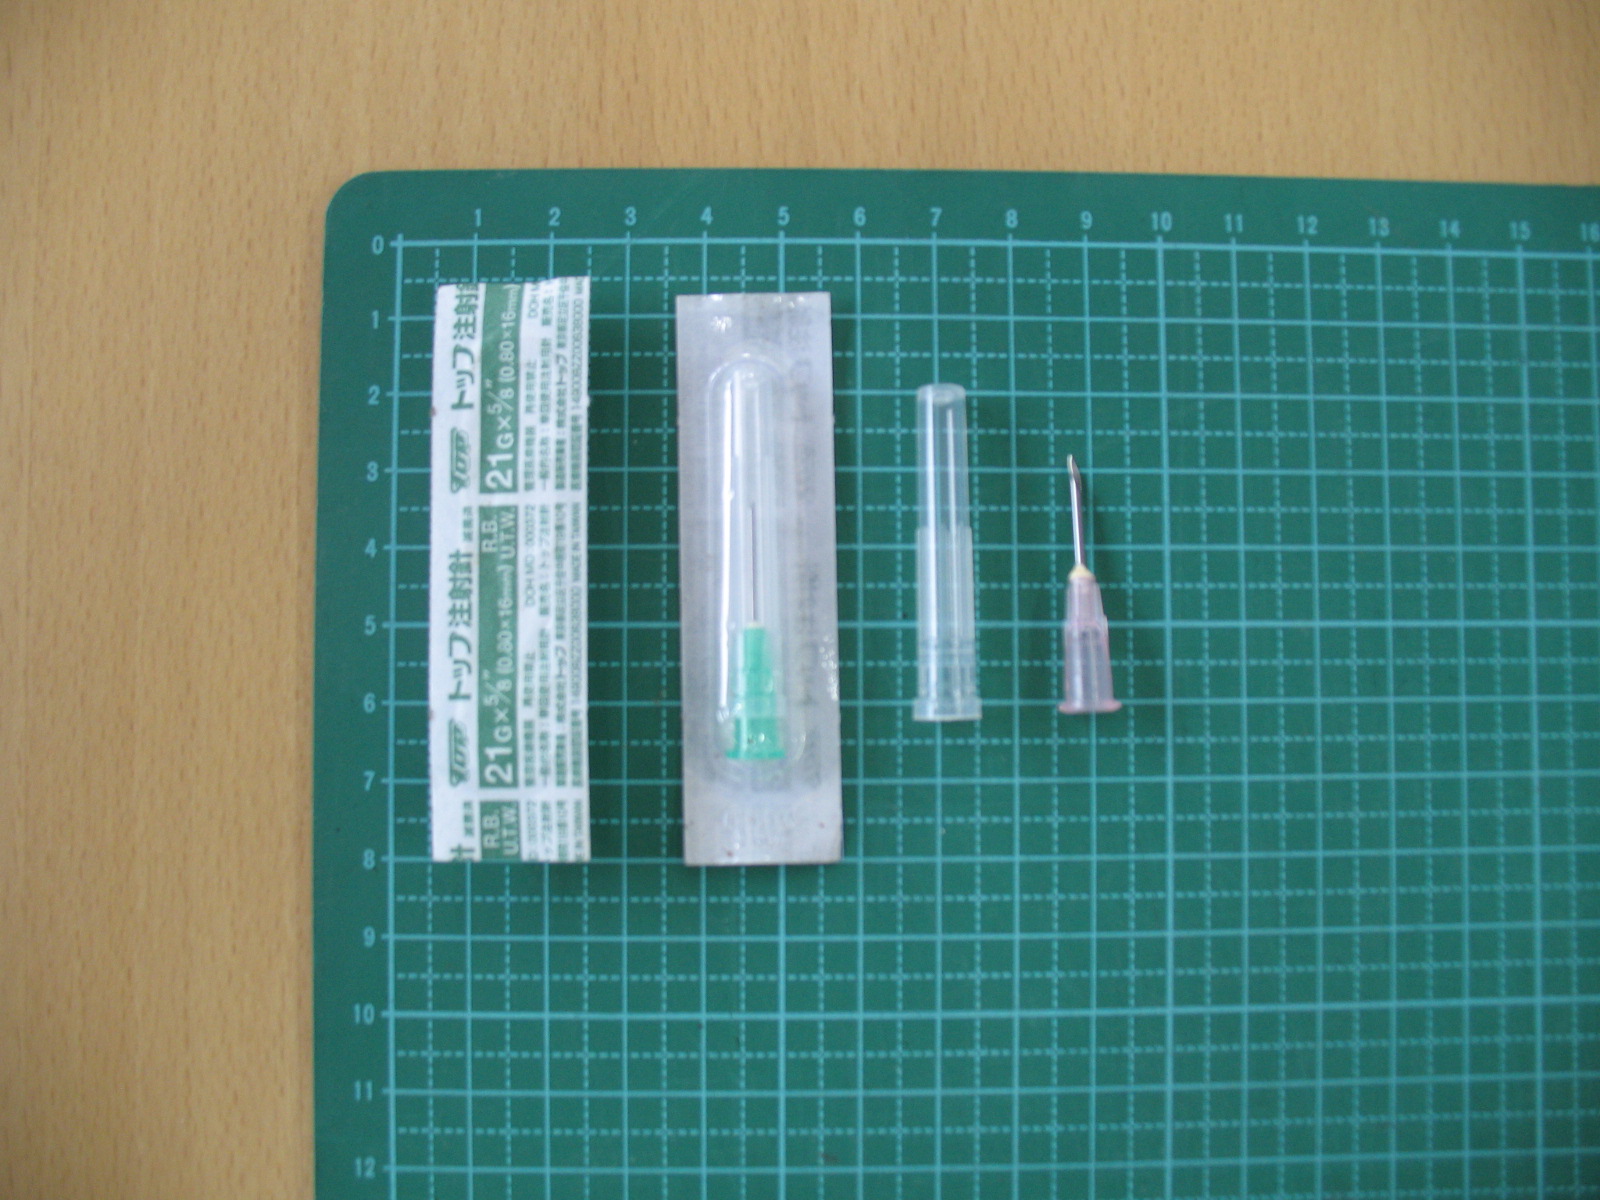 袋に入っている未使用な針や使用済みの注射針を並べた写真